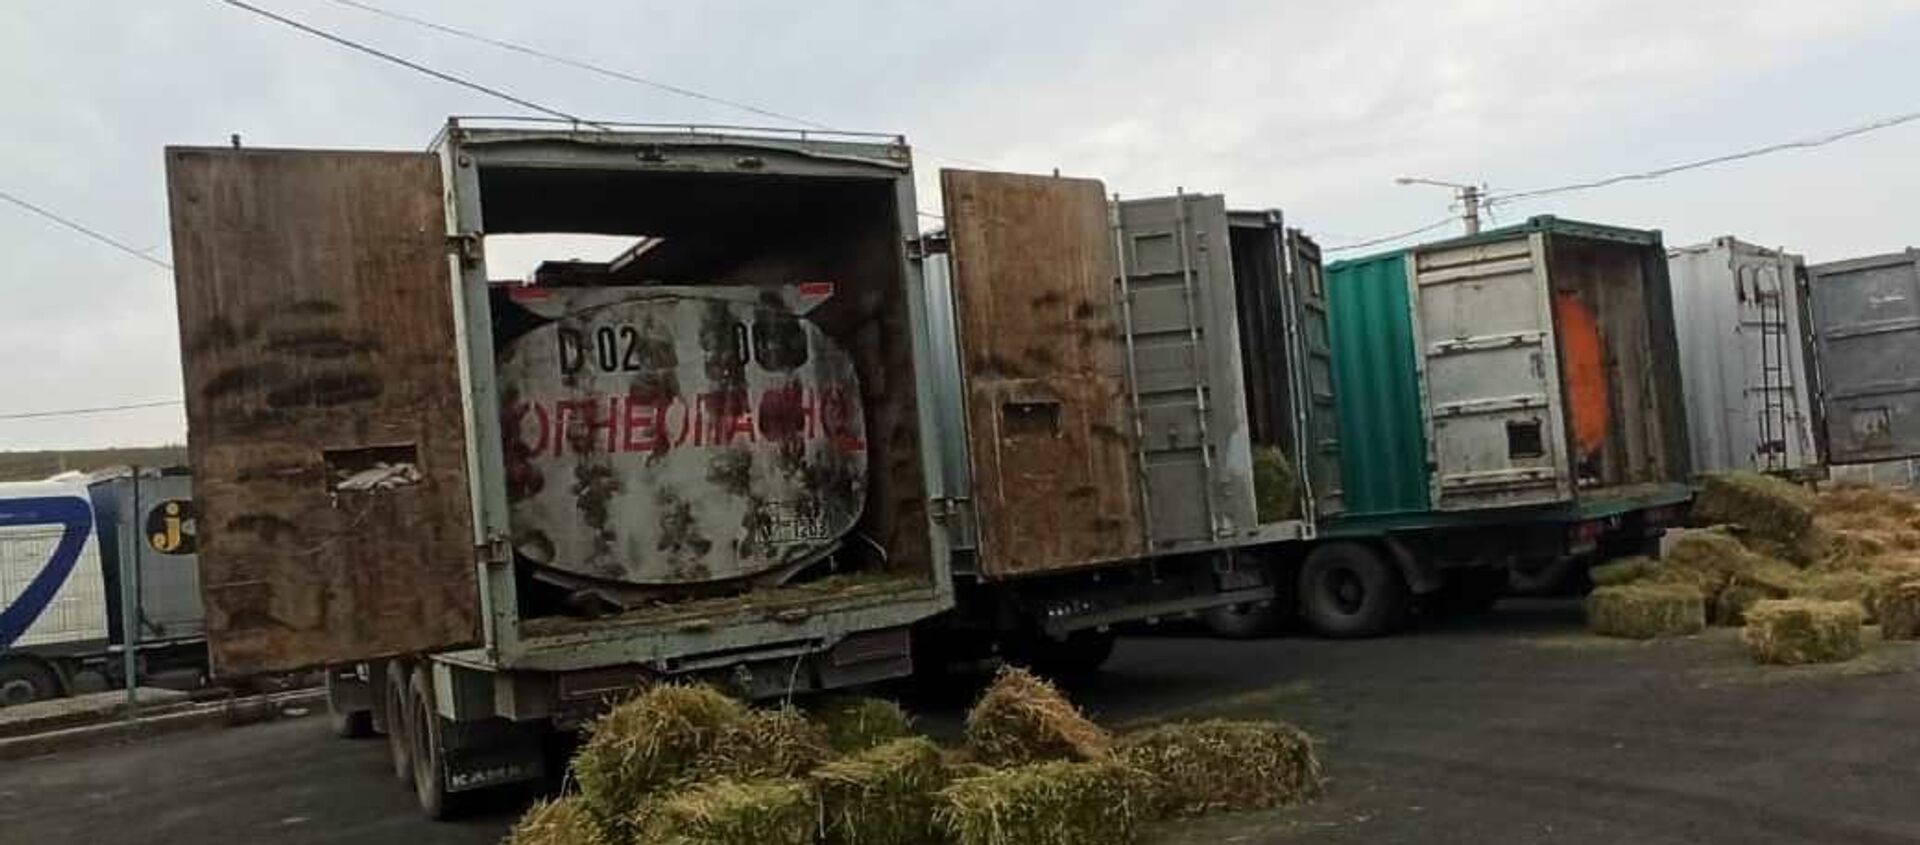 Задержание незаконно перевозивших ГСМ грузовиков - Sputnik Кыргызстан, 1920, 03.03.2021